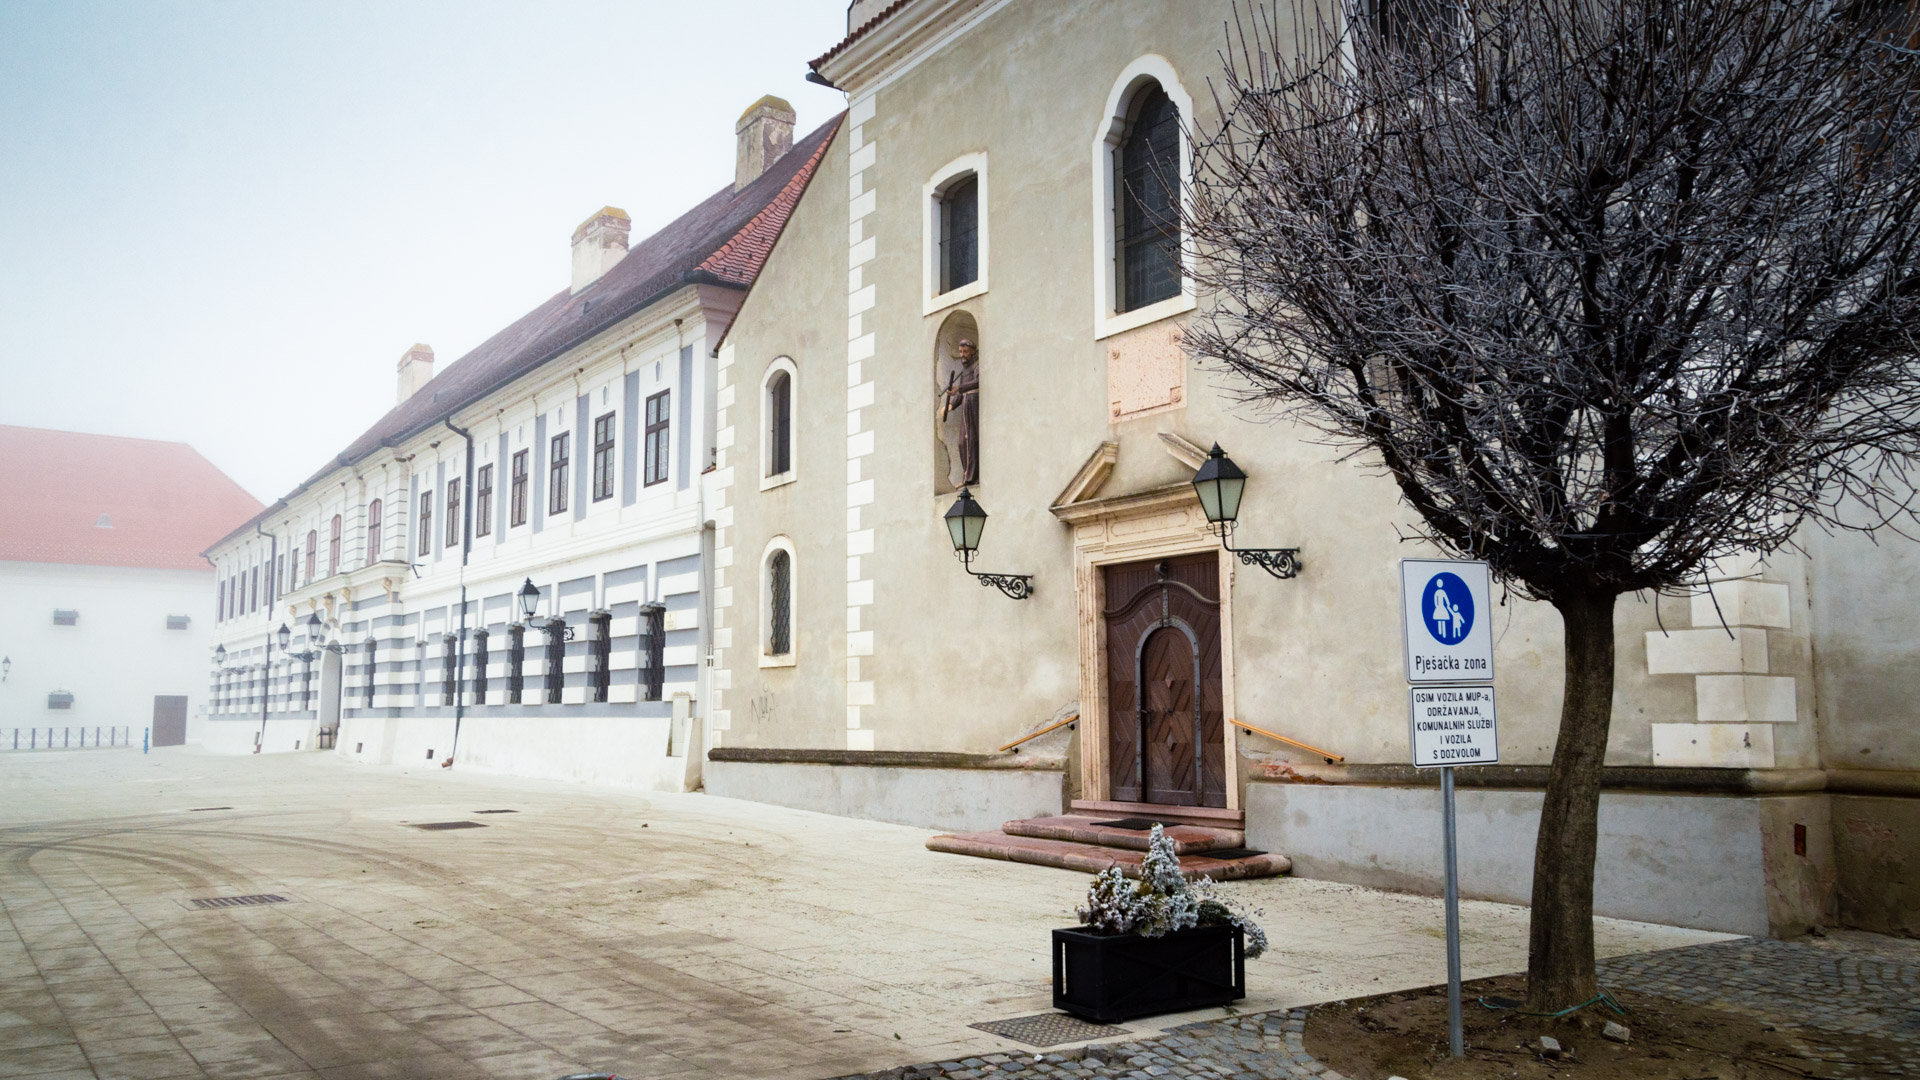 Franjevacki+samostan+i+crkva+sv+antuna+3